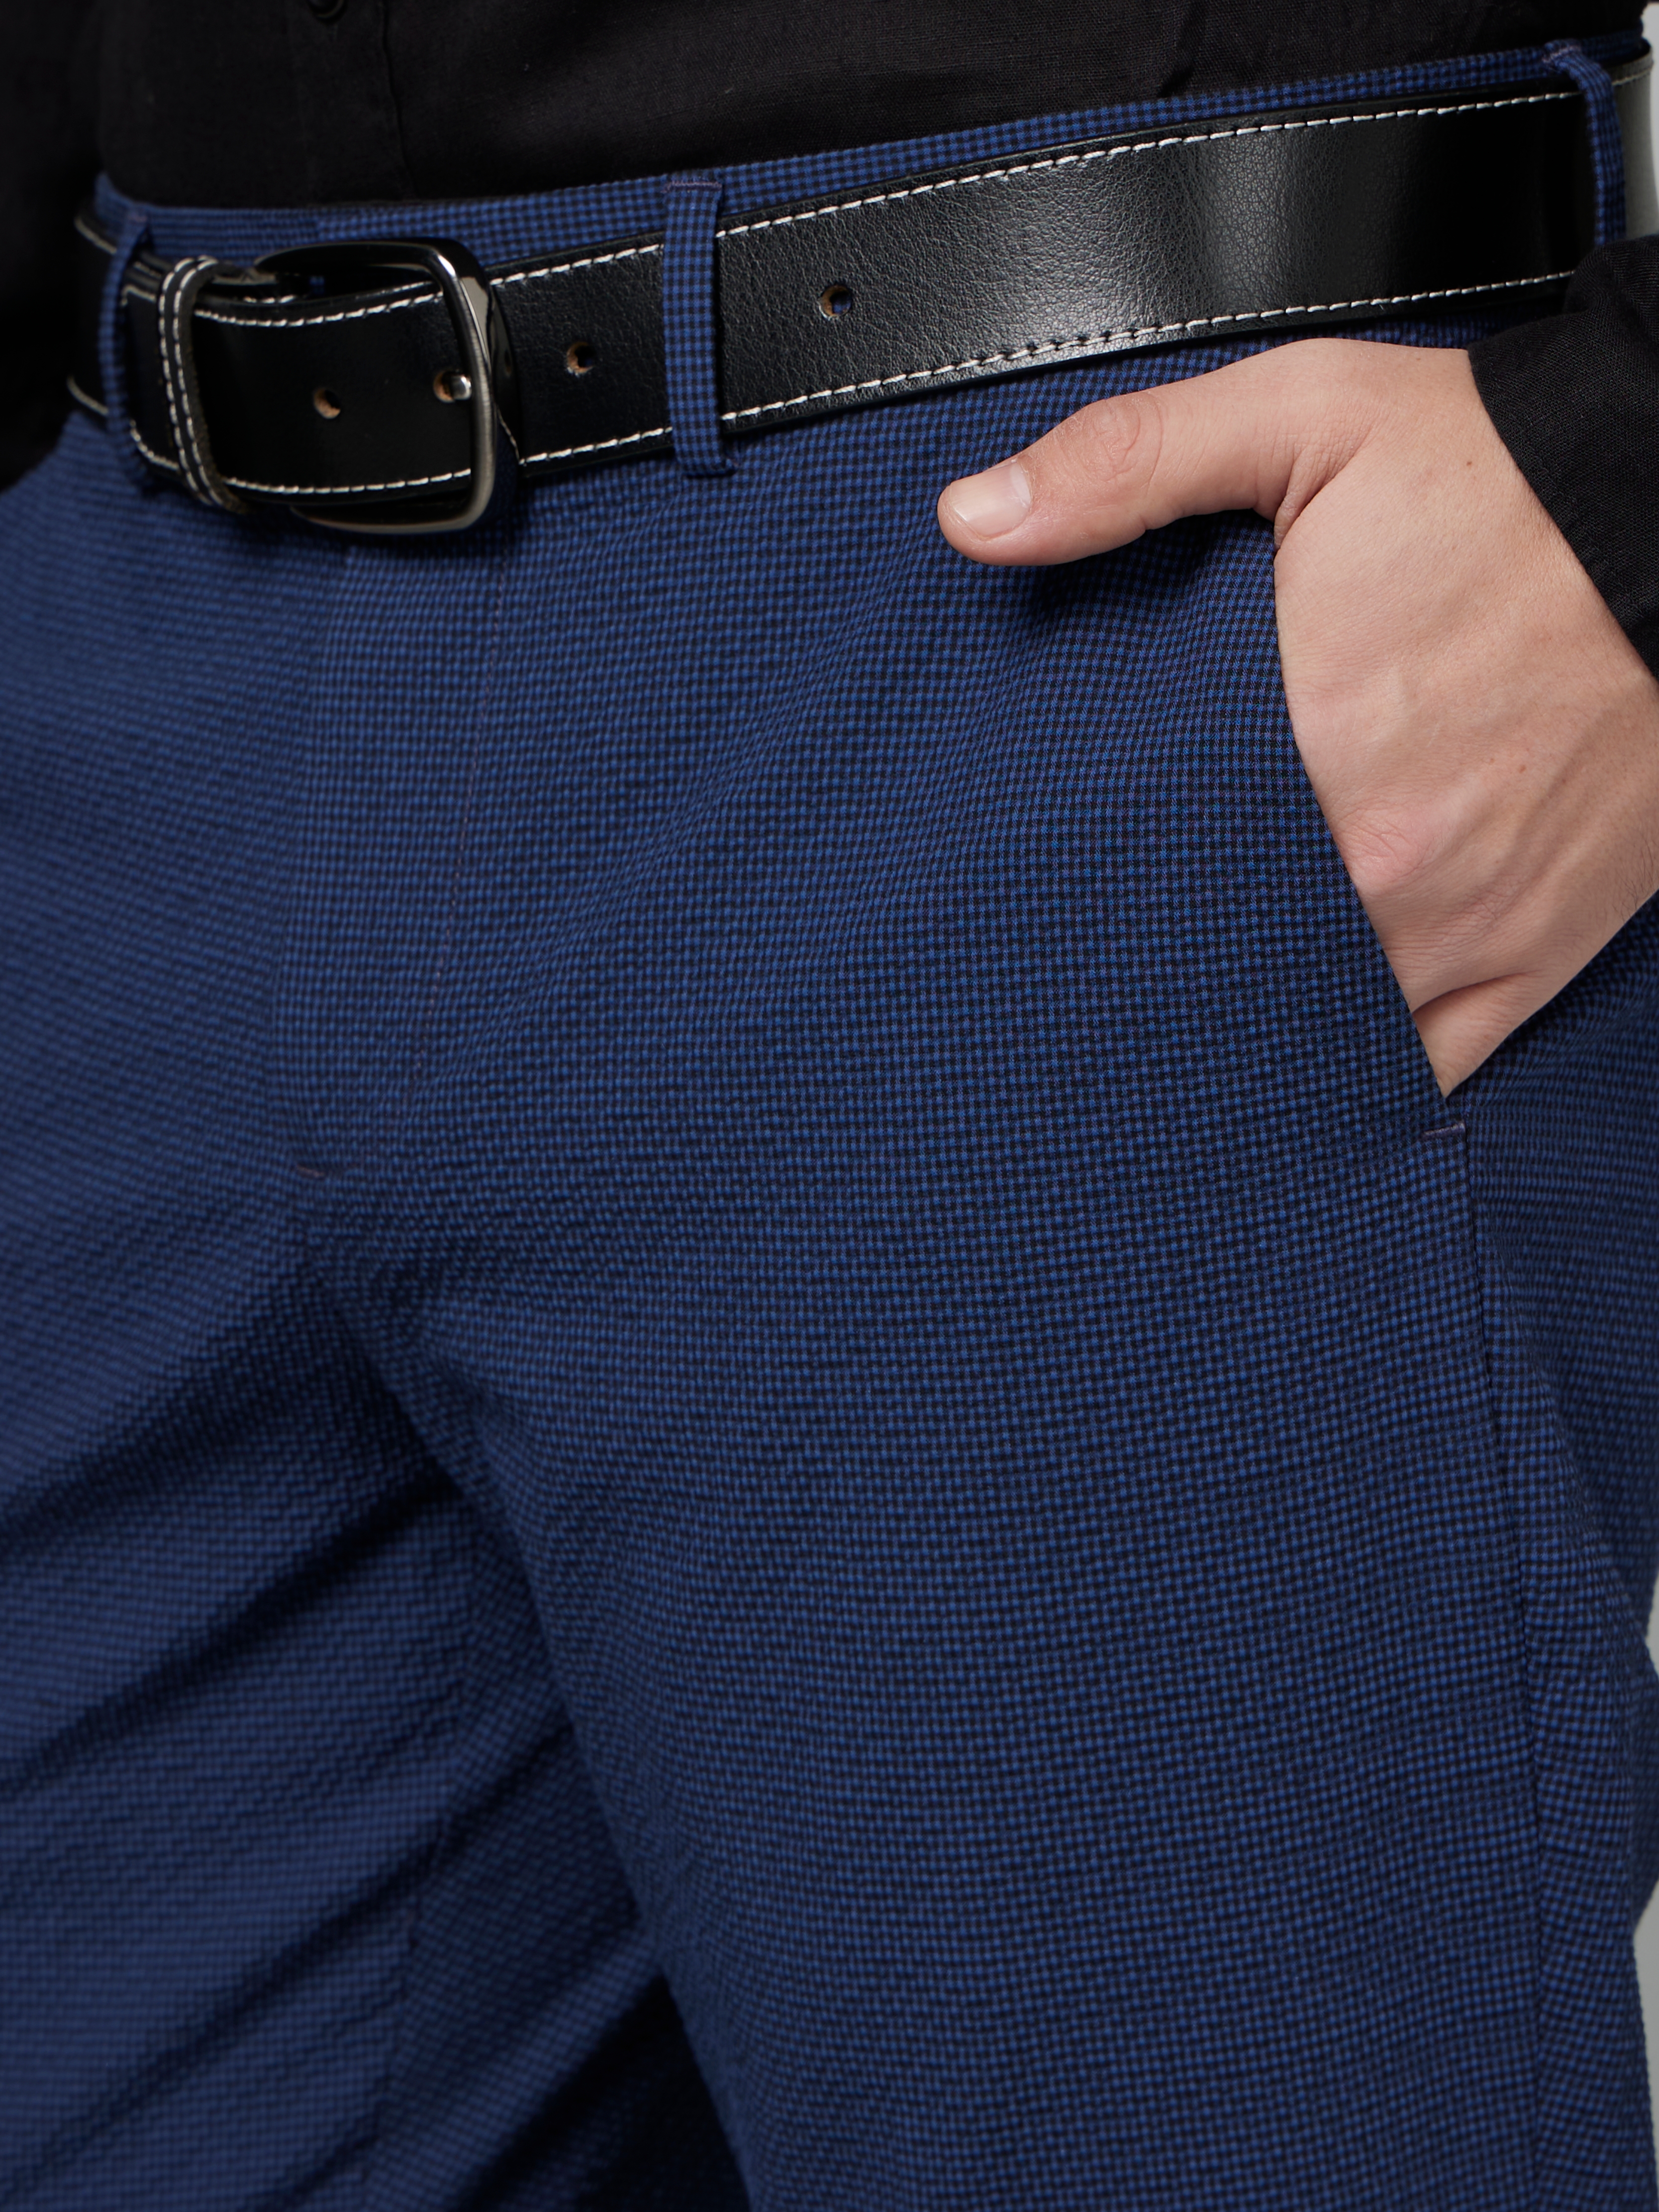 navy blue trouser for women's